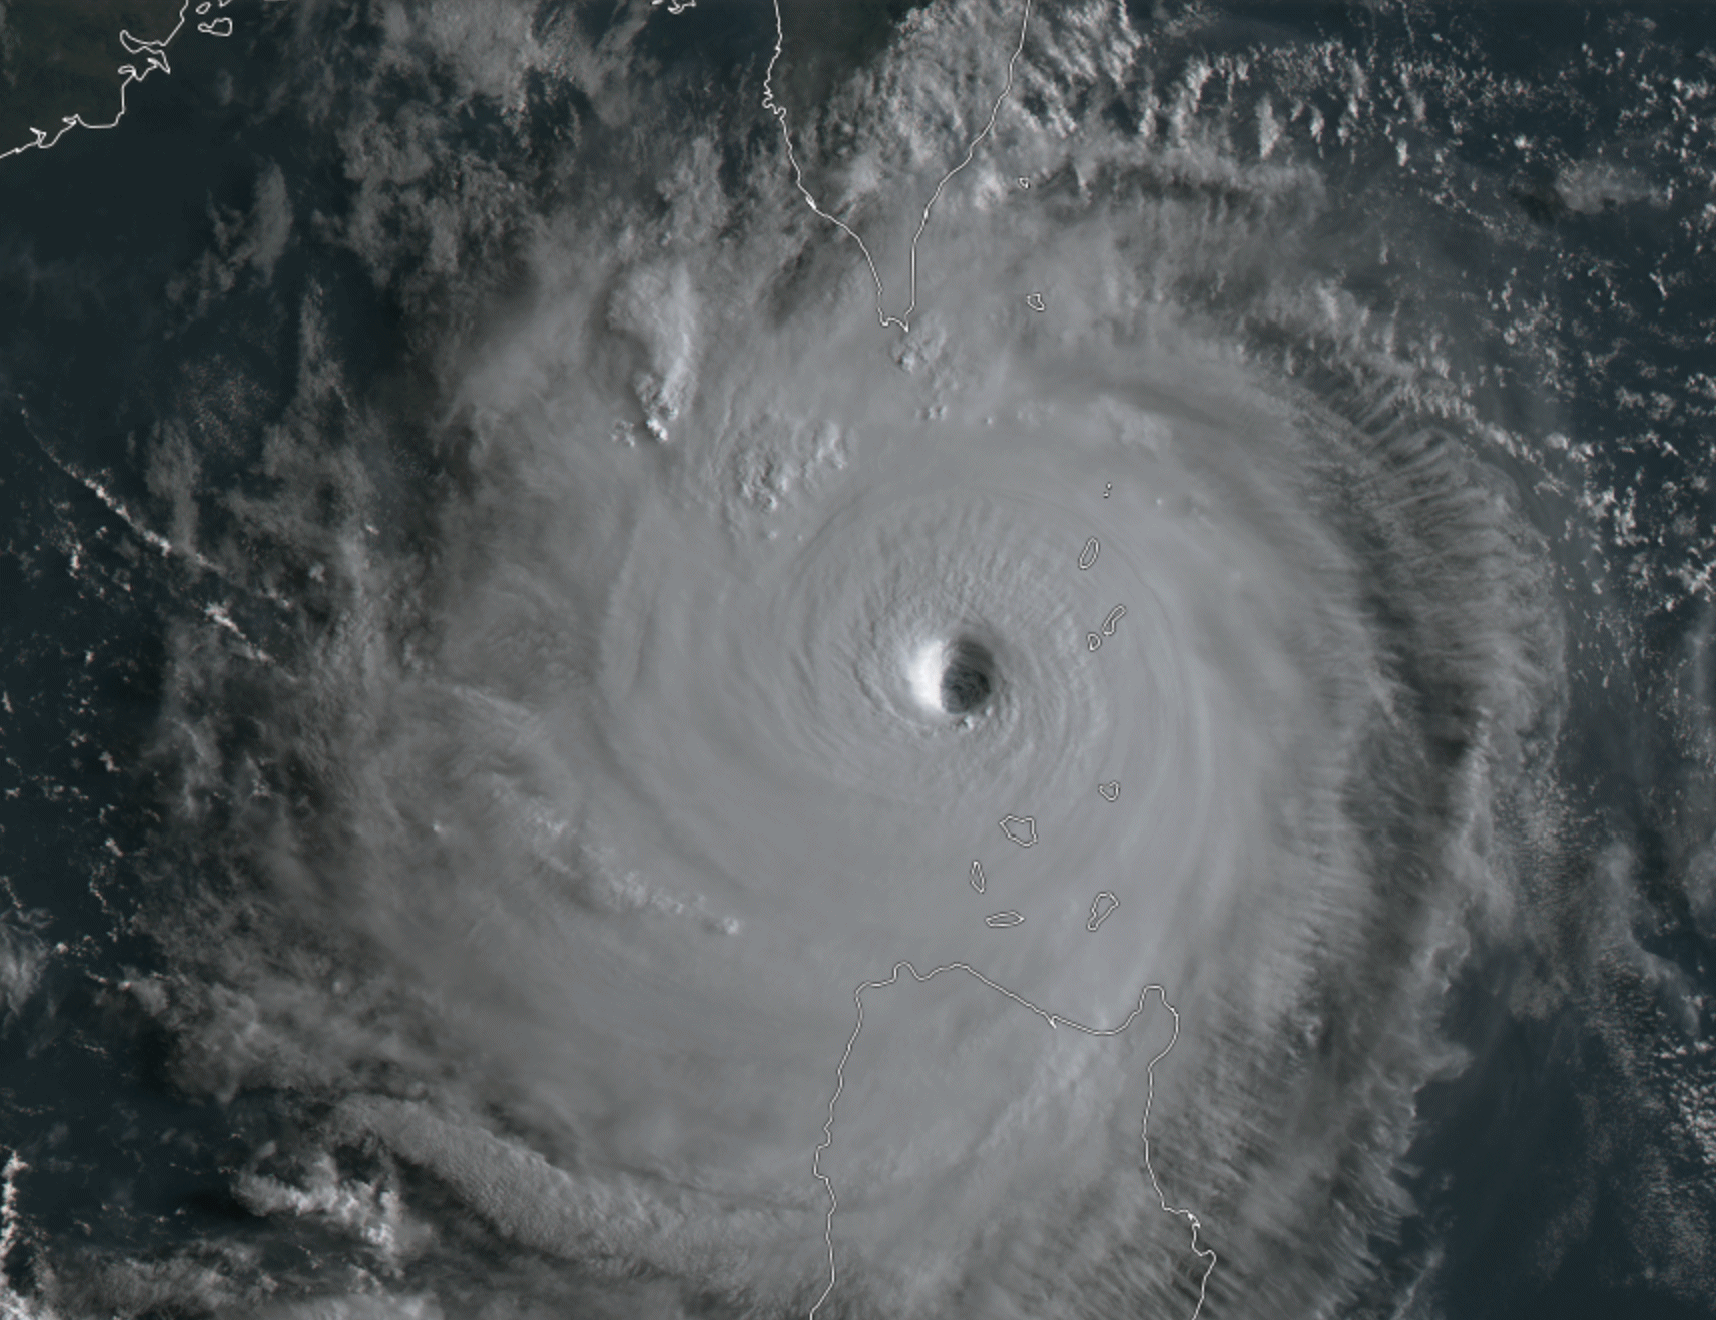 <p>Le super typhon Saola est à la limite de la catégorie 5 (135 kts estimés par le JTWC) entre Taïwan et les Philippines ce mercredi matin.</p>